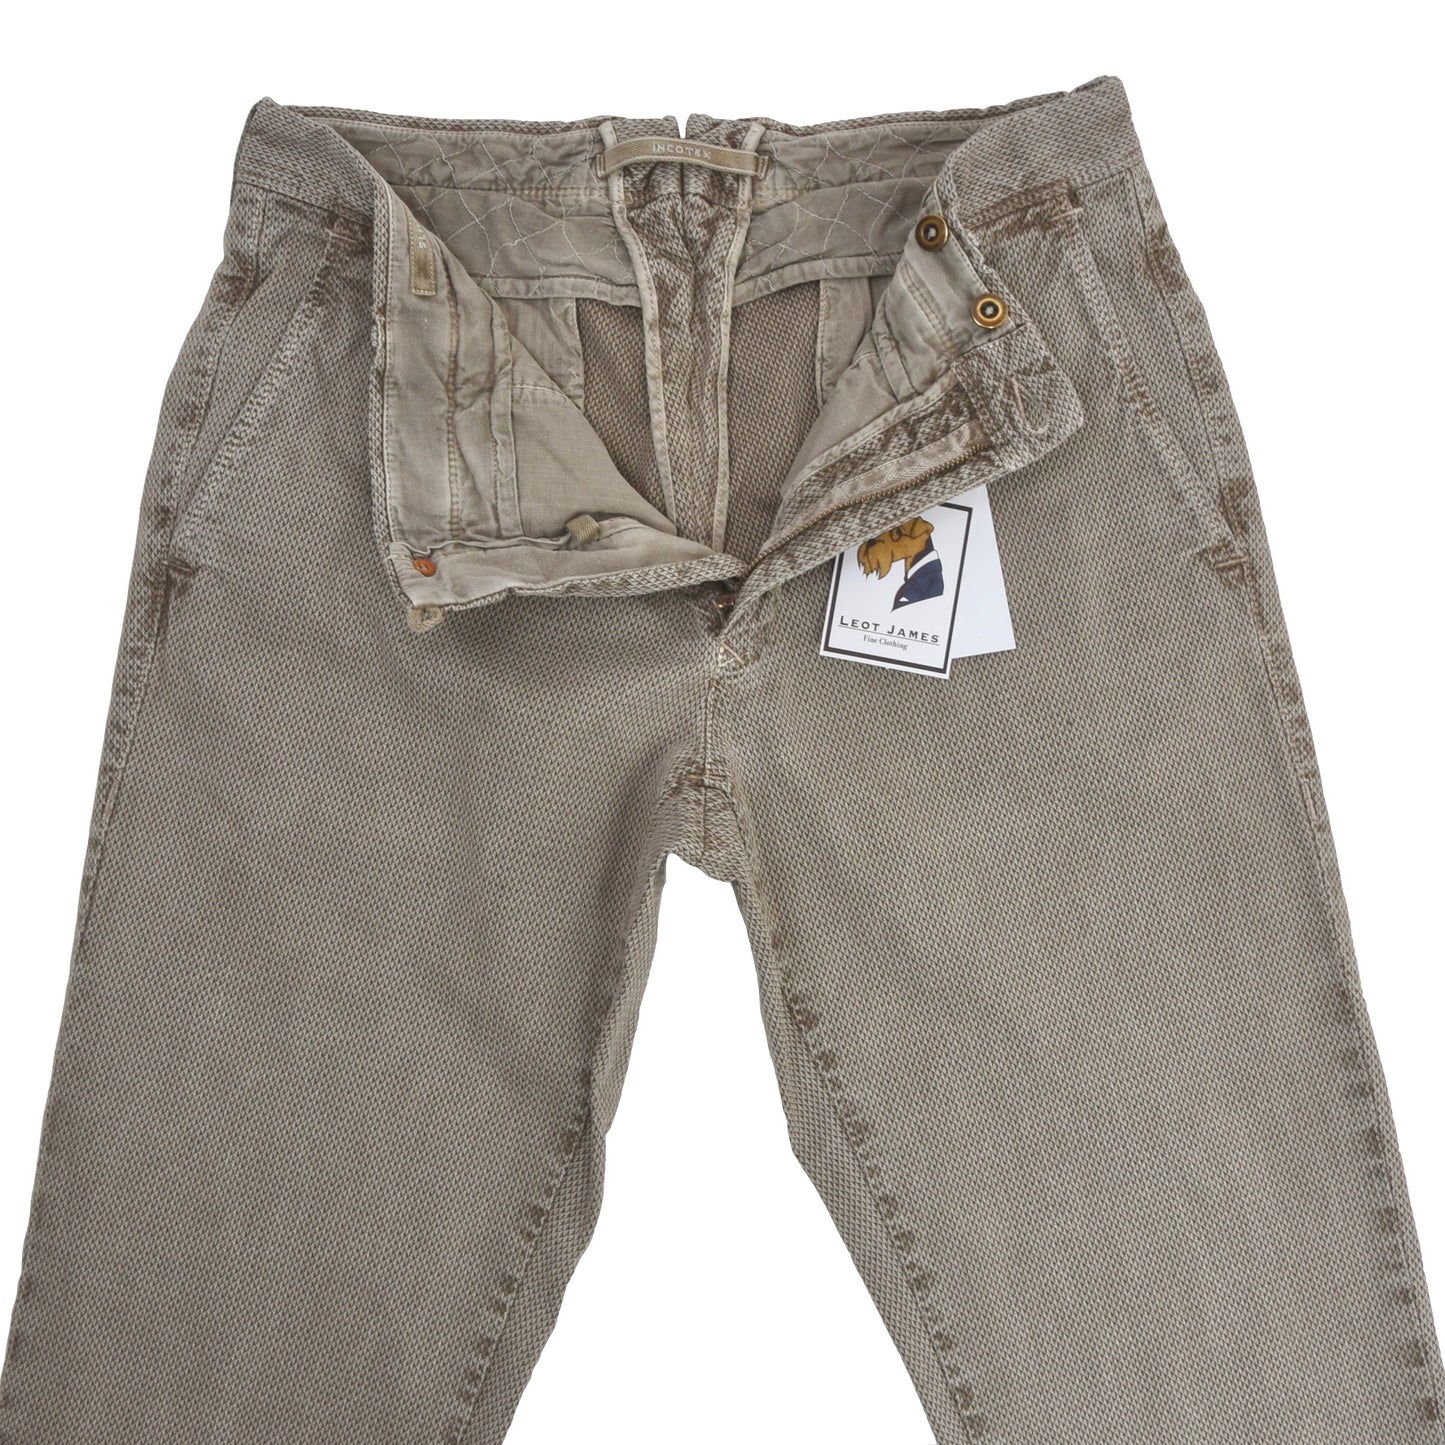 Incotex Cotton Pants Slacks Size 33 Slim Fit